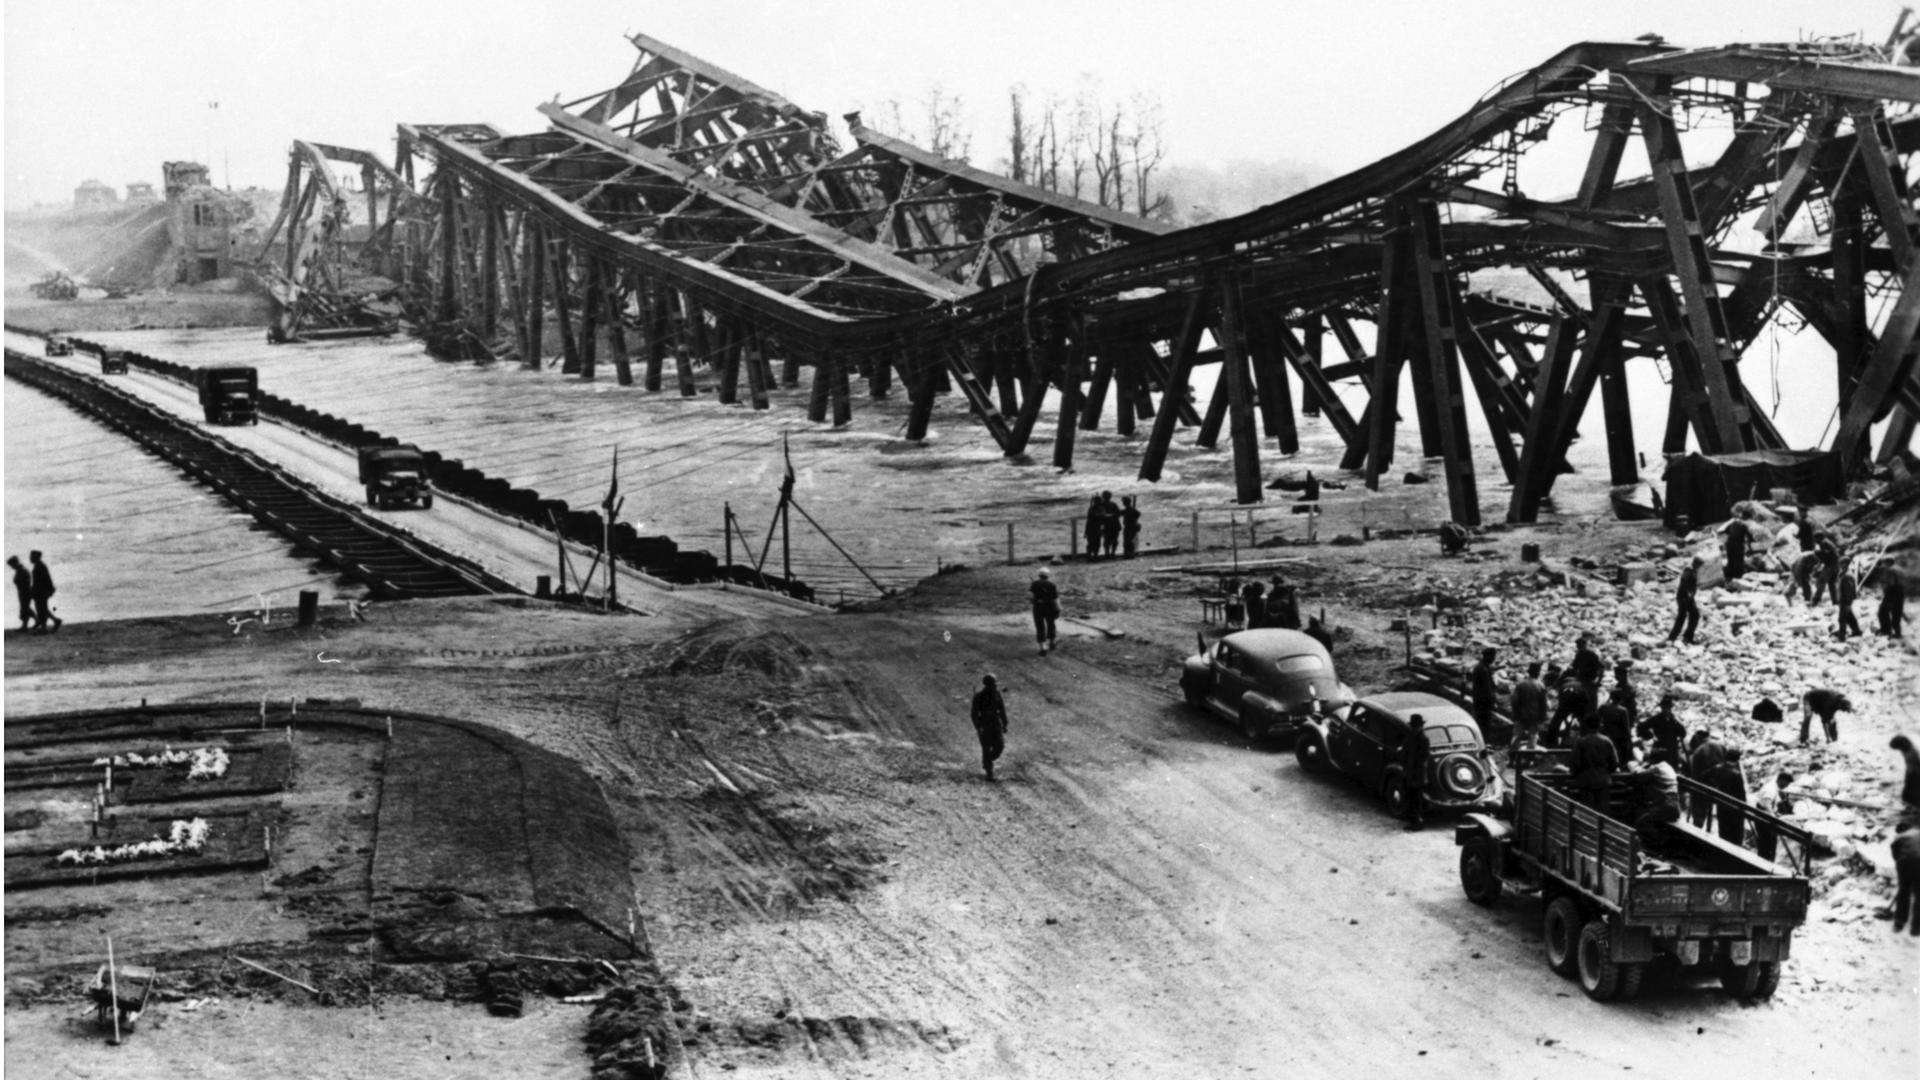 Zerstört und provisorisch ersetzt: Die Rheinbrücke liegt im April 1945 im Wasser. Über die Behelfsbrücke können die Menschen weiter zwischen Karlsruhe und Wörth hin und her fahren.